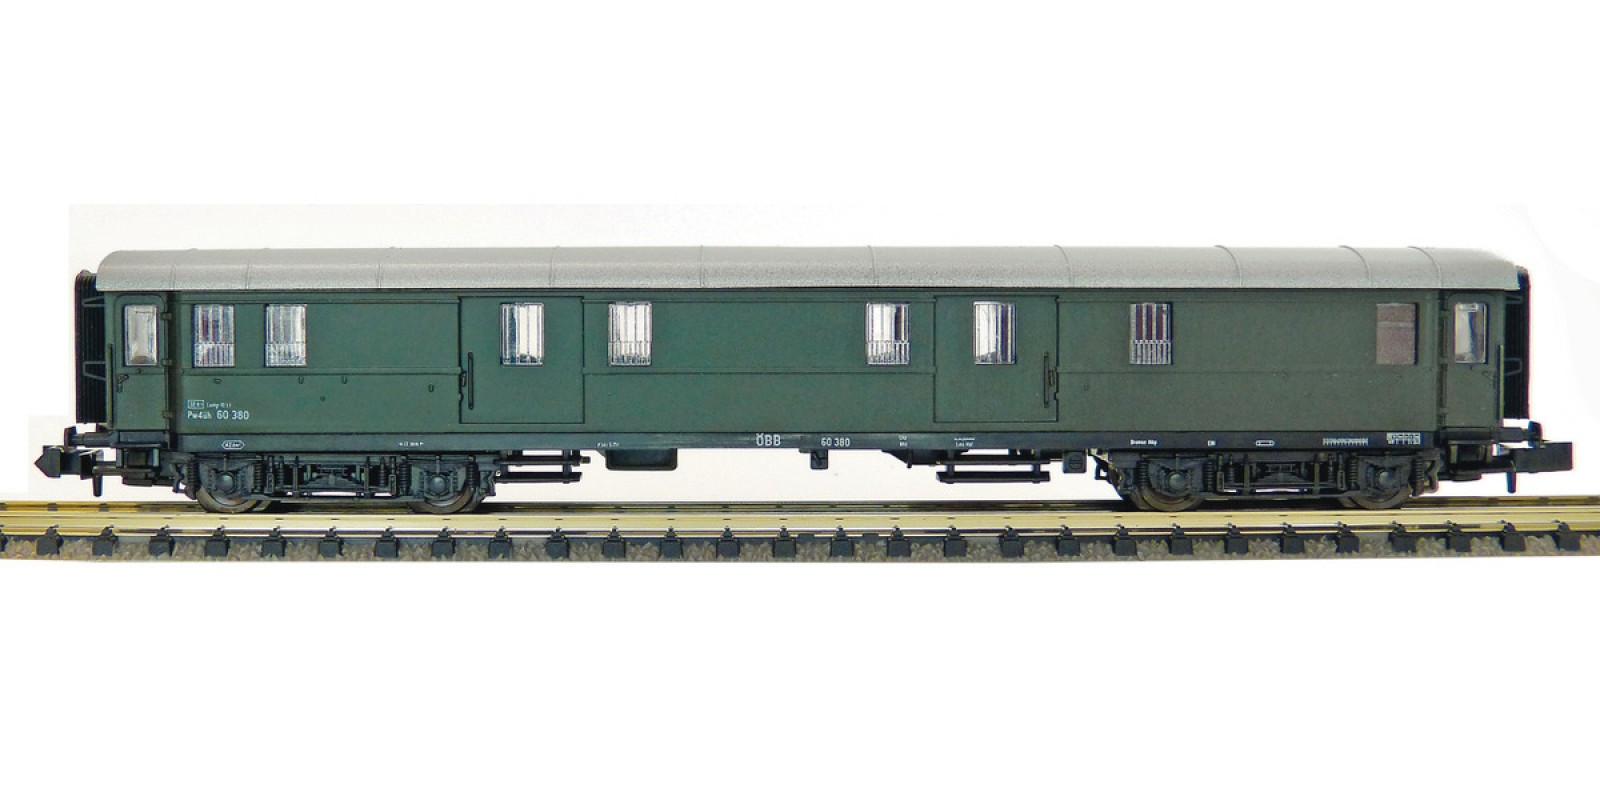  FL862901- Luggage coach for semi-fast trains, ÖBB